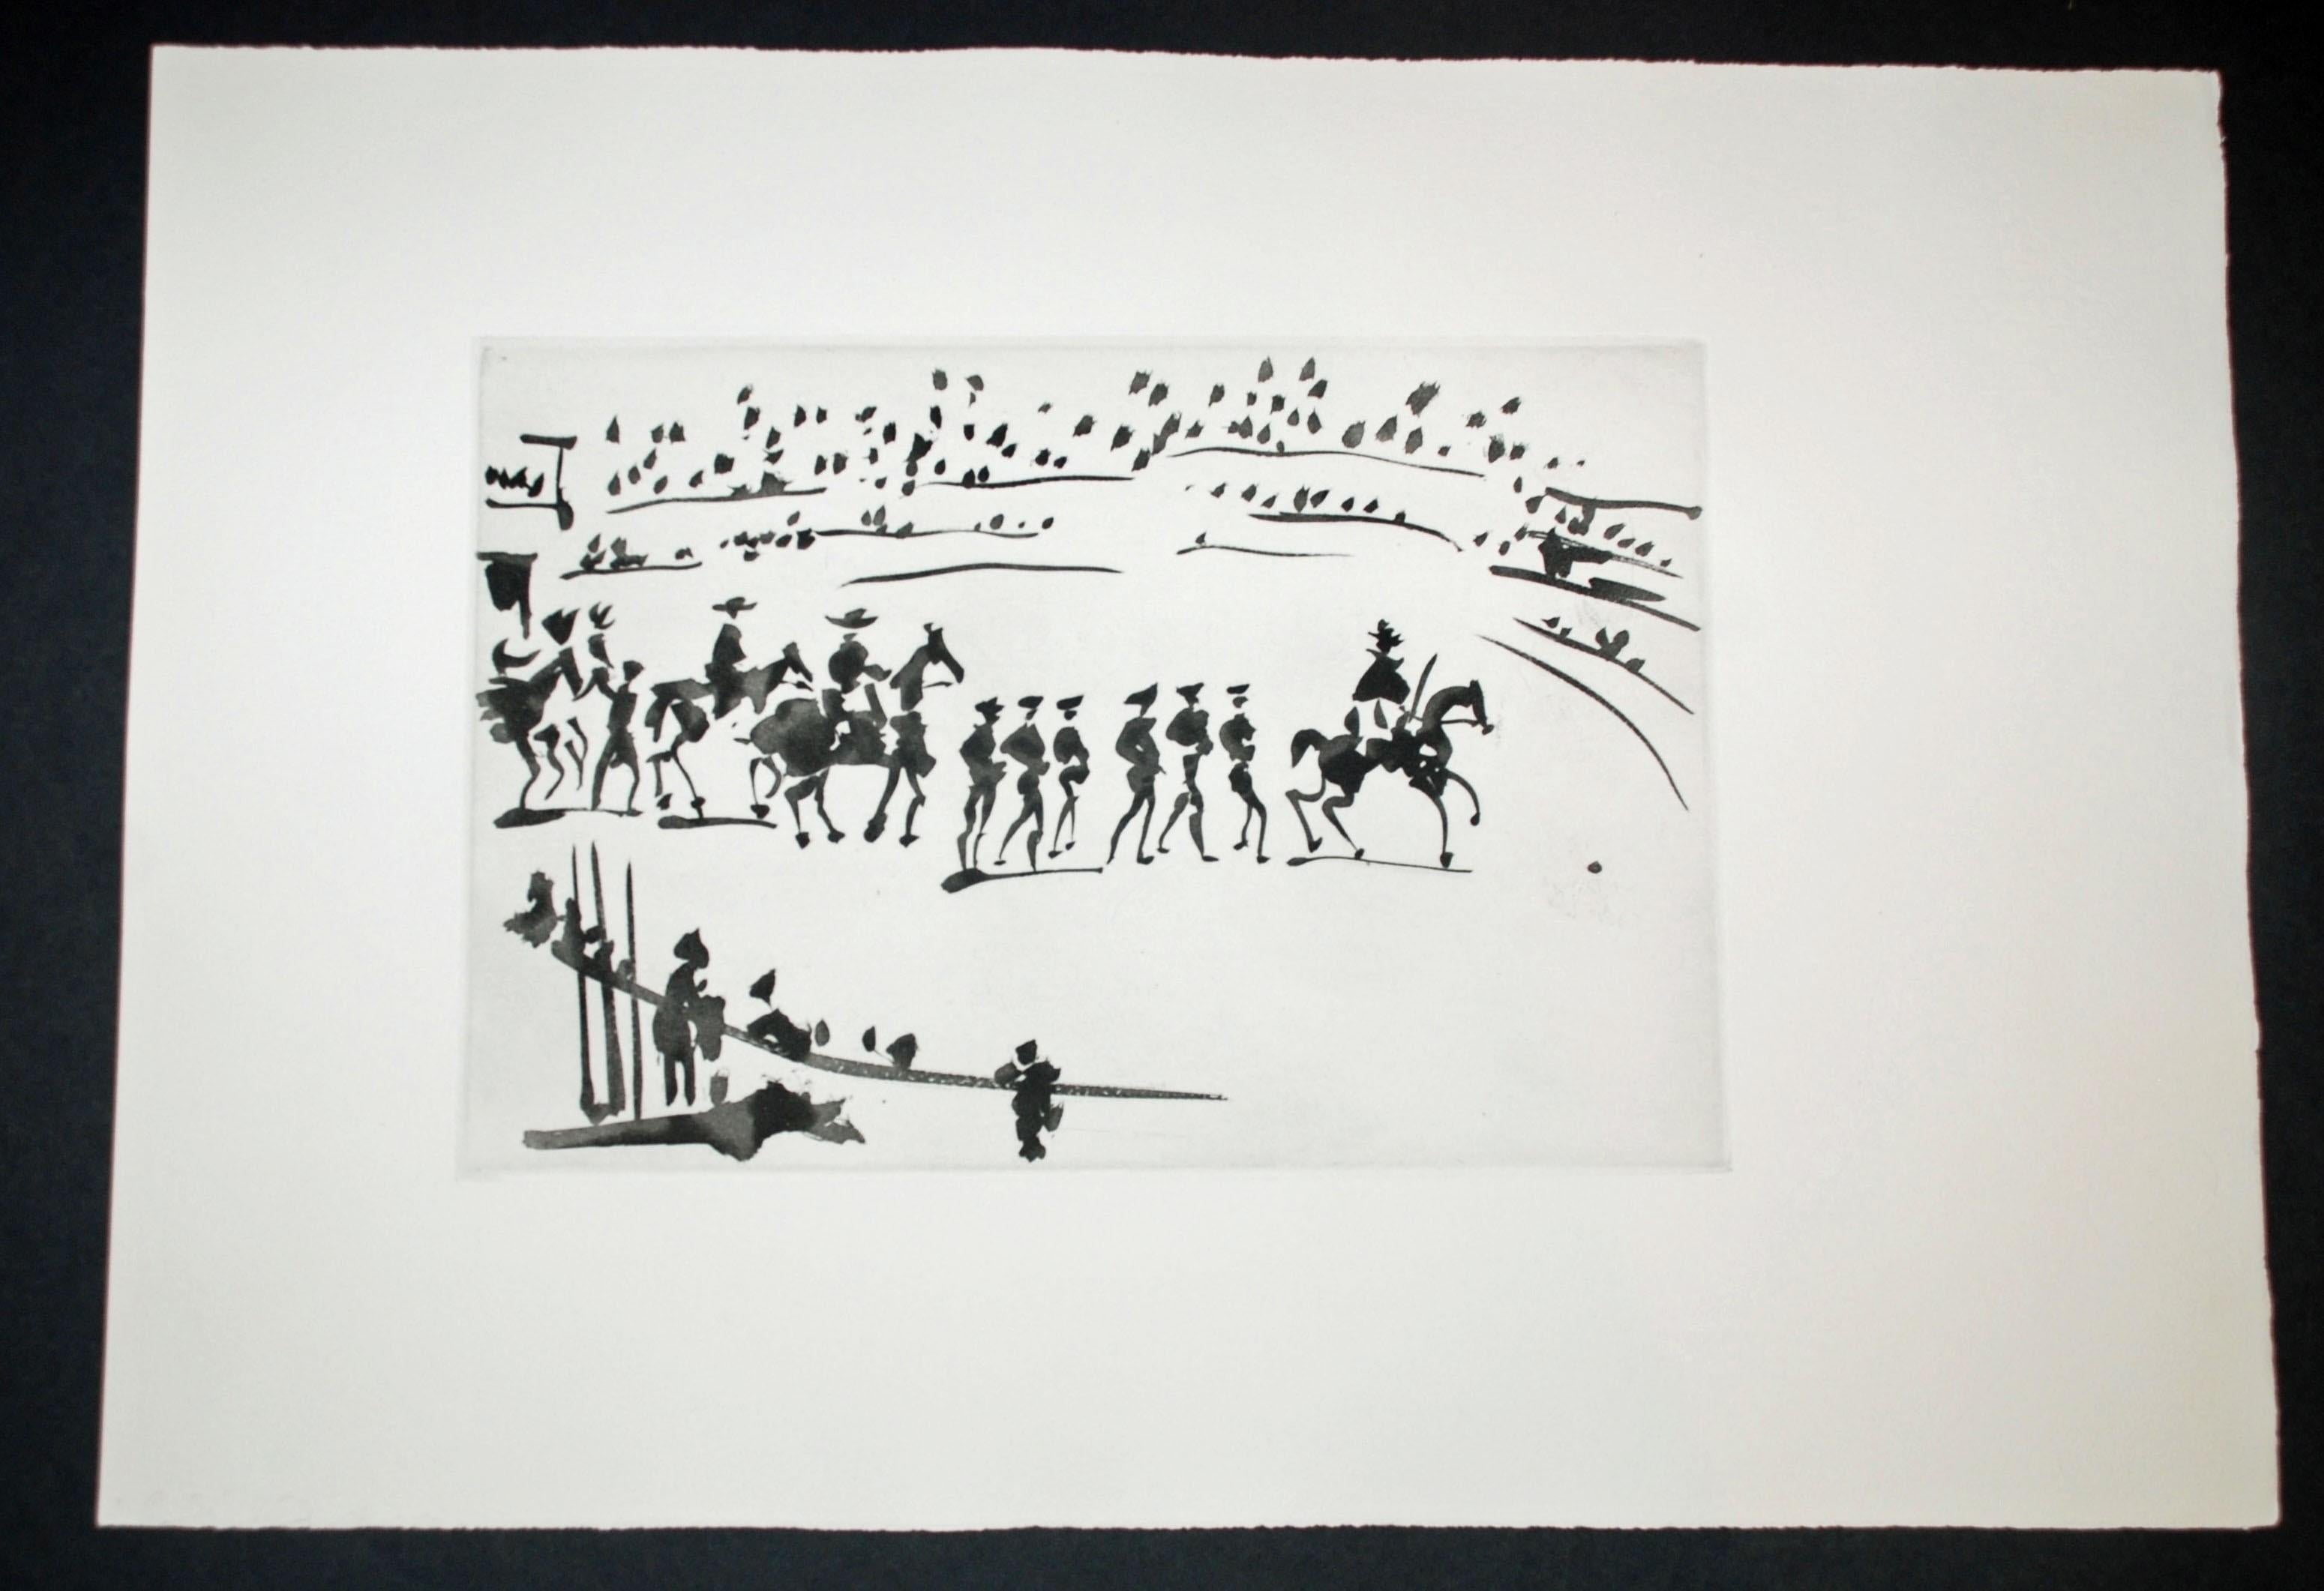 Paseo de Cuadrillas (Ride of the Bullfighting Teams) - Print by Pablo Picasso